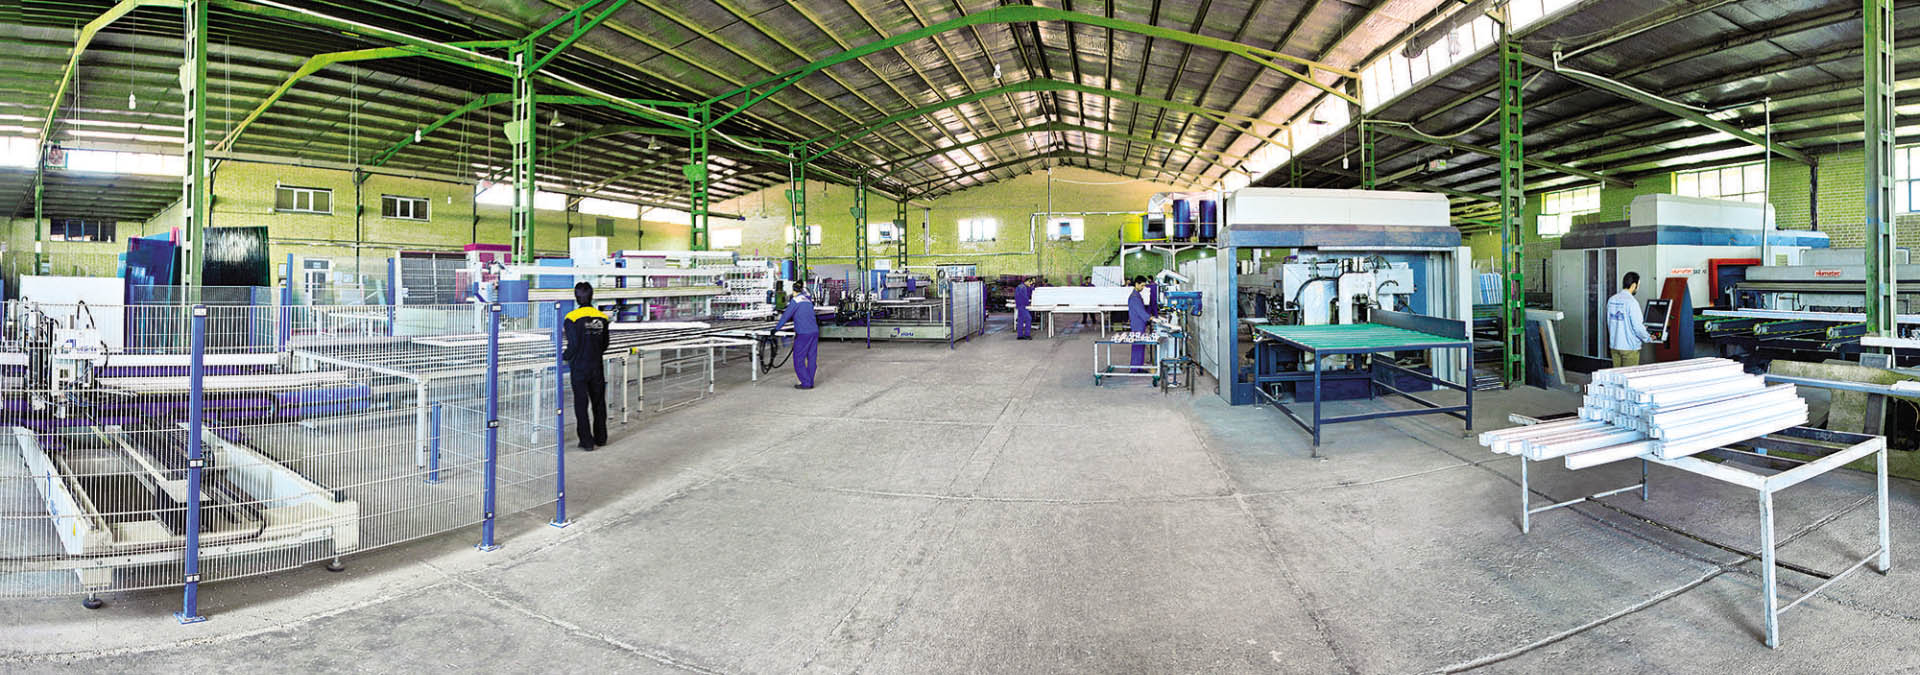 بزرگترین تولیدکننده در و پنجره یو پی وی سی با شیشه چندجداره در شرق کشور